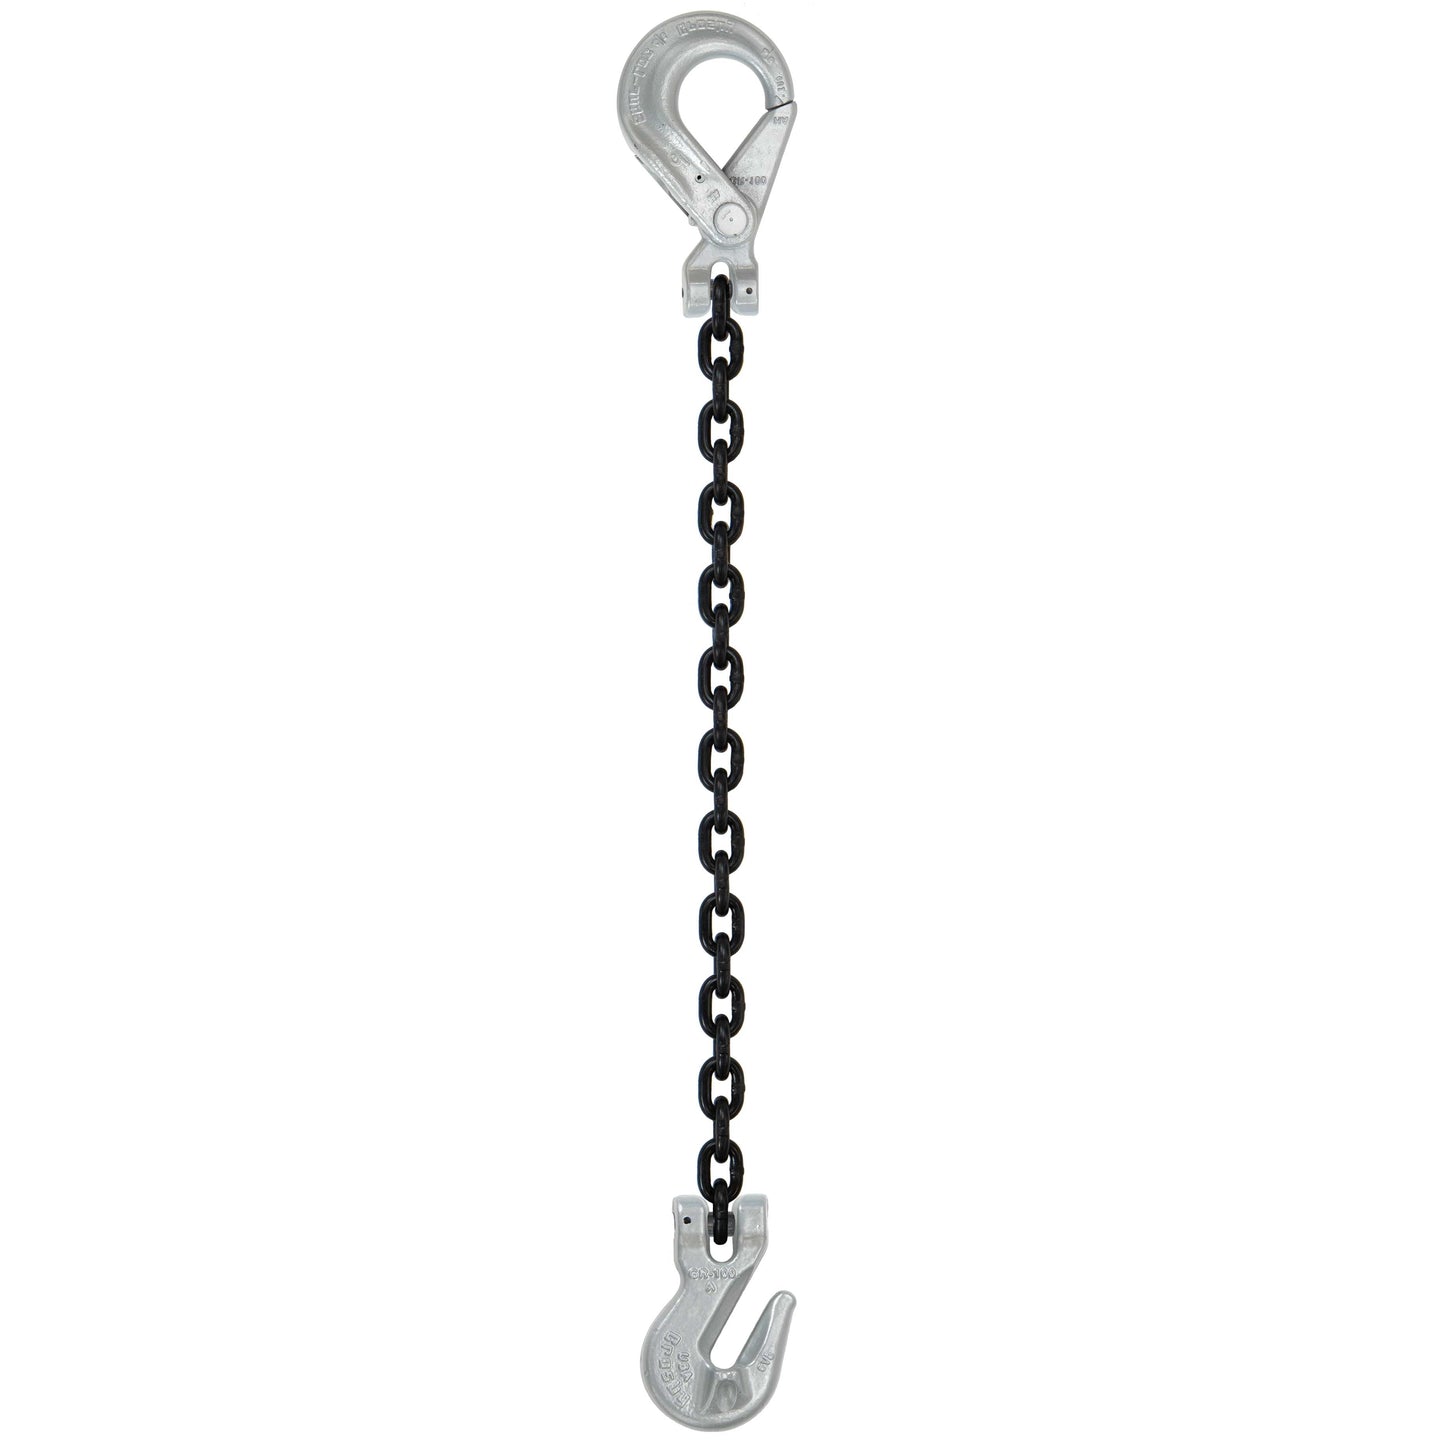 9/32" x 10' - Domestic Single Leg Chain Sling w/ Crosby Grab & Self-Locking Hooks - Grade 100